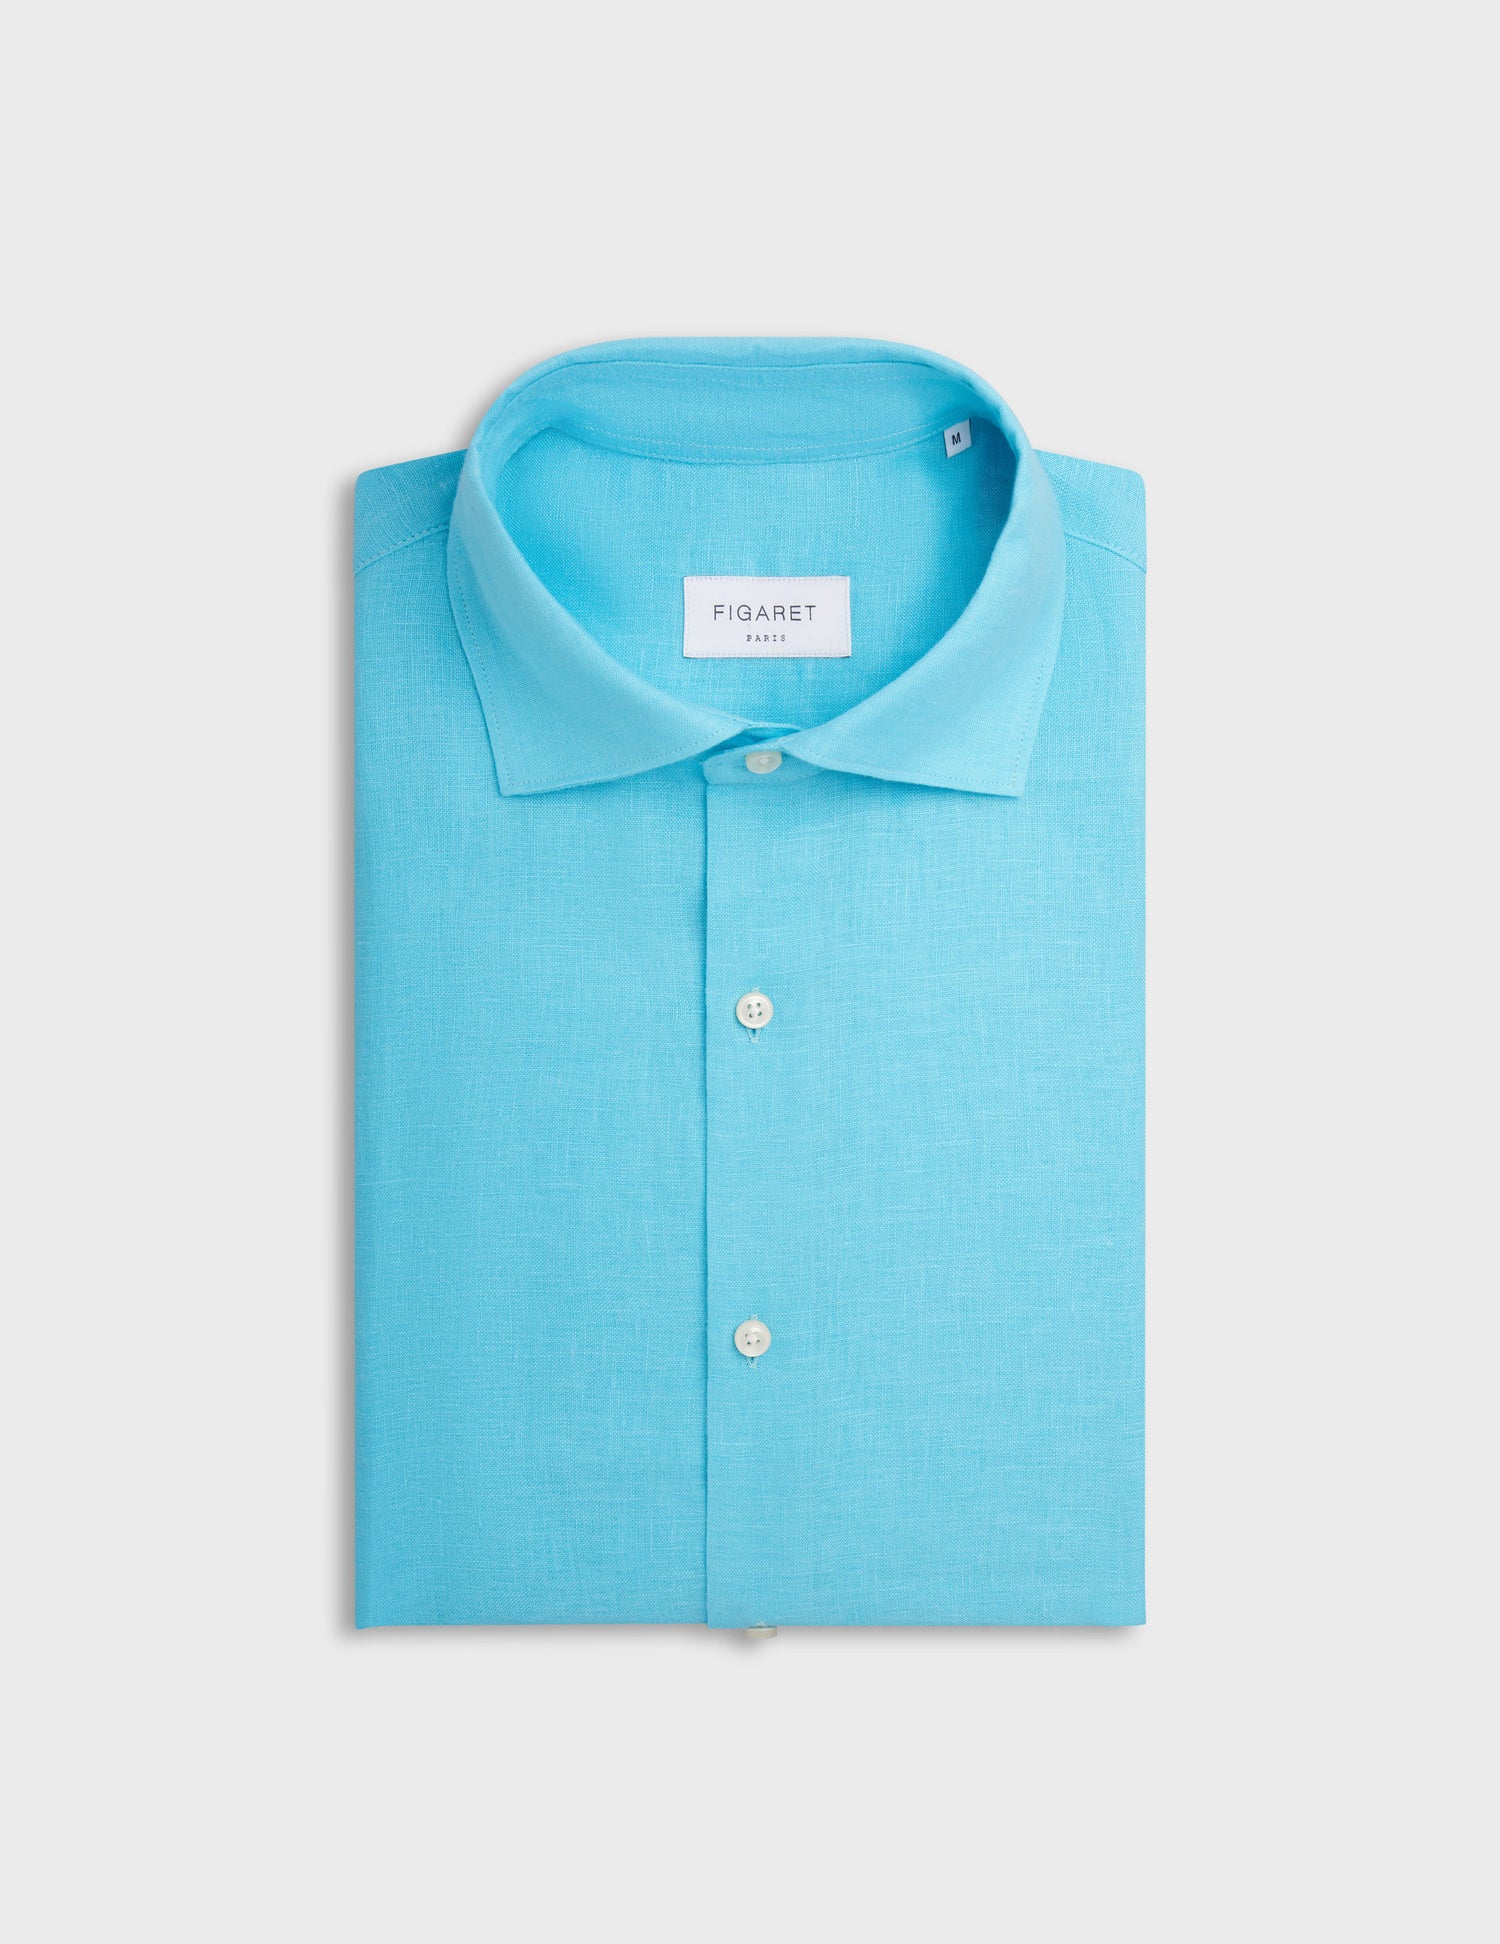 Aristote shirt in turquoise linen - Linen - Italian Collar#4